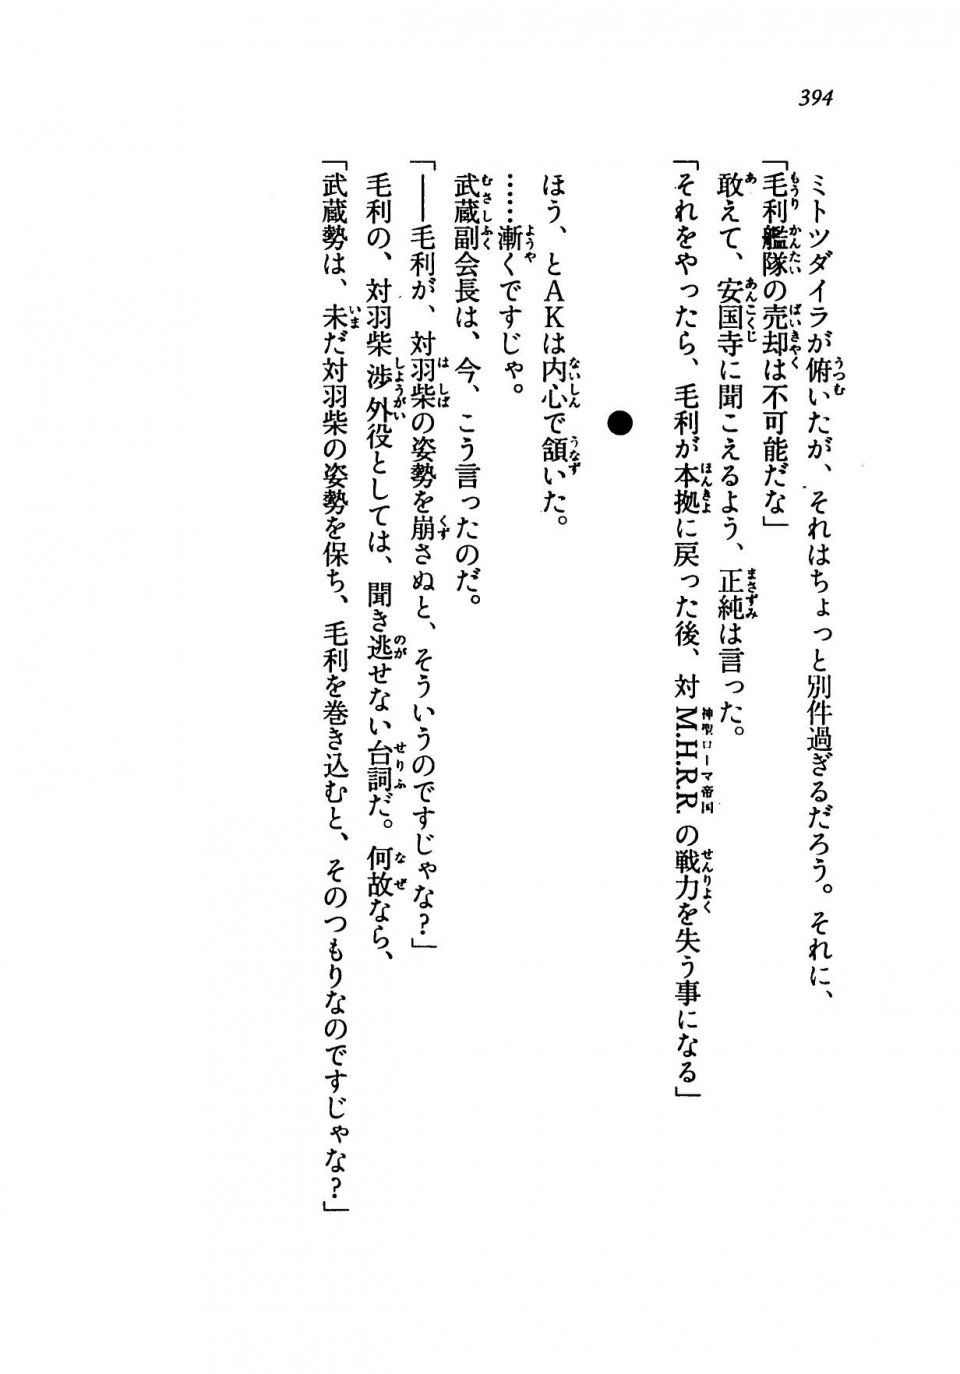 Kyoukai Senjou no Horizon LN Vol 19(8A) - Photo #394